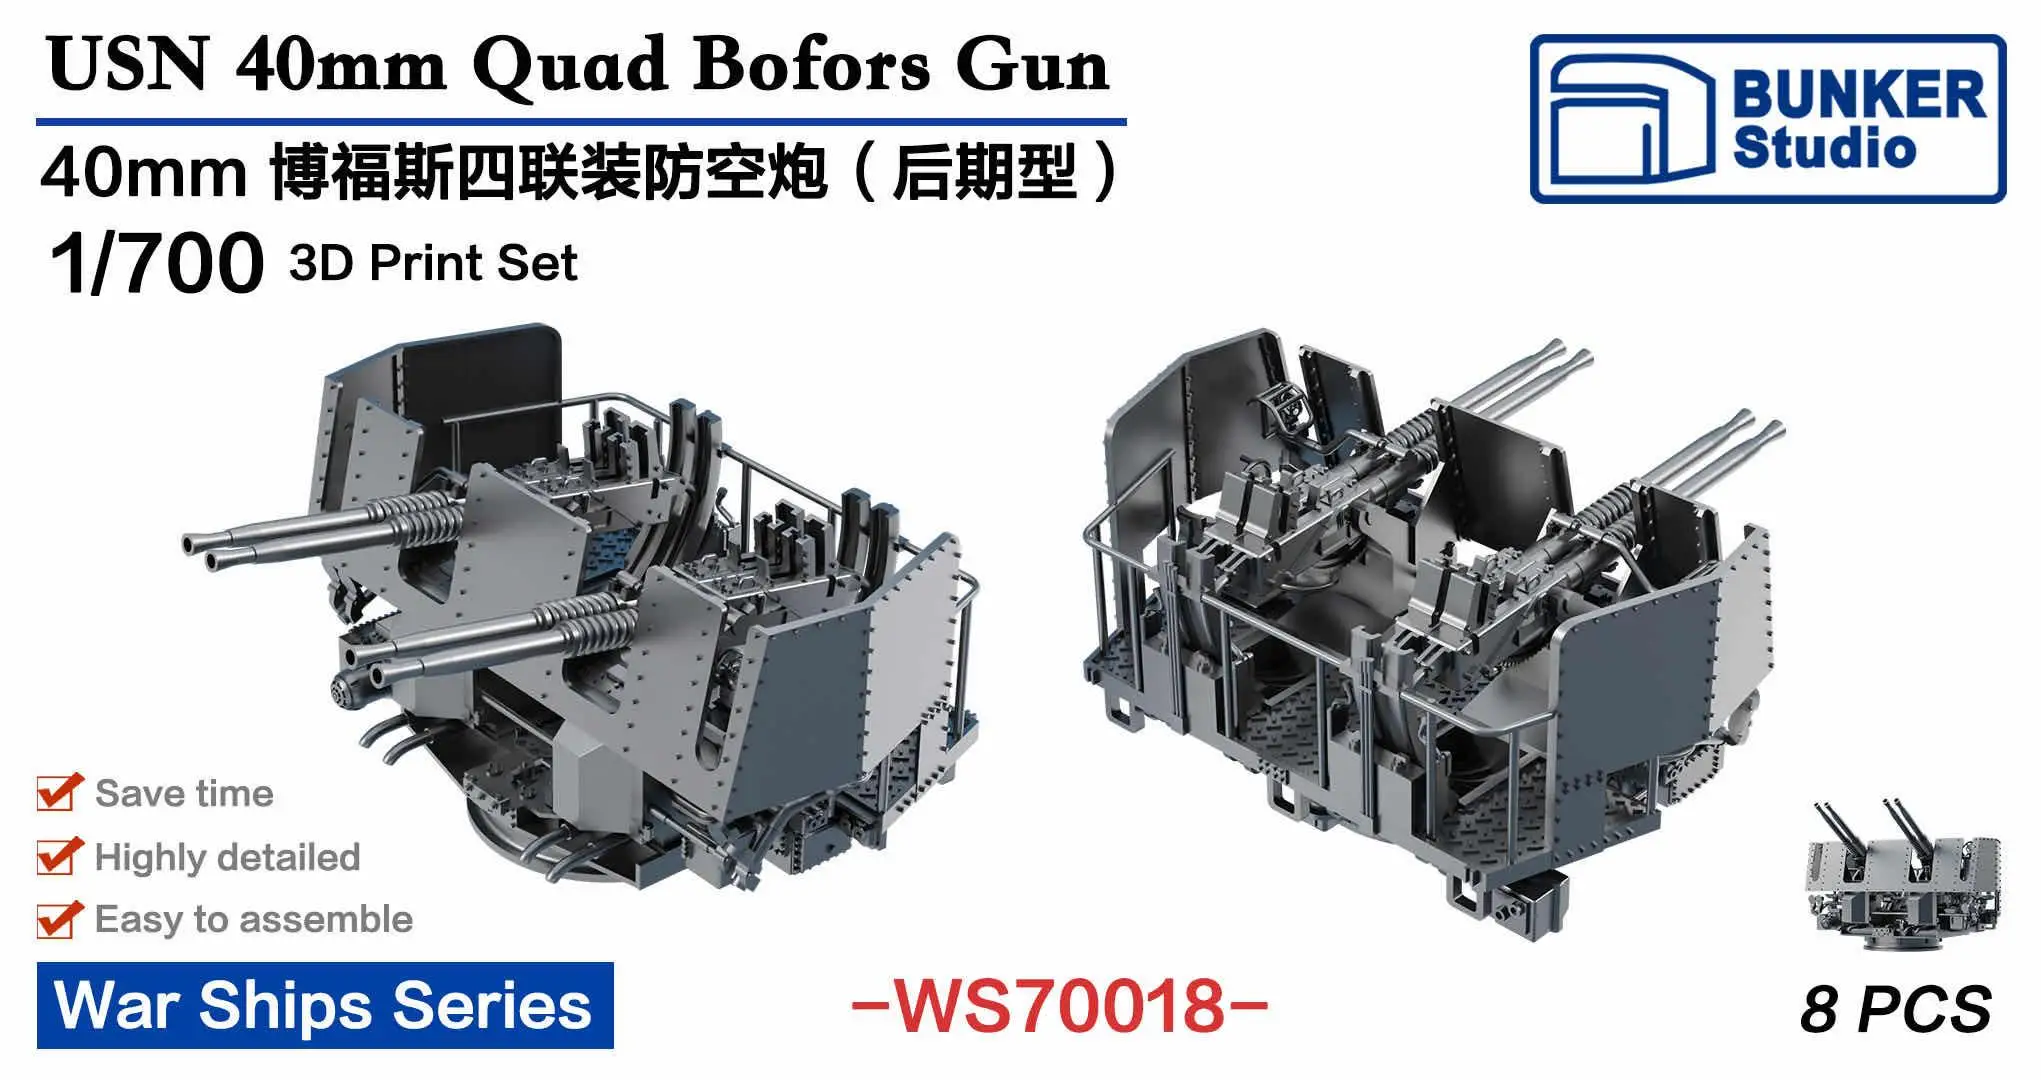 

BUNKER WS70018 1/700 USN 40mm Quad Bofors Gun (Late Ver.)